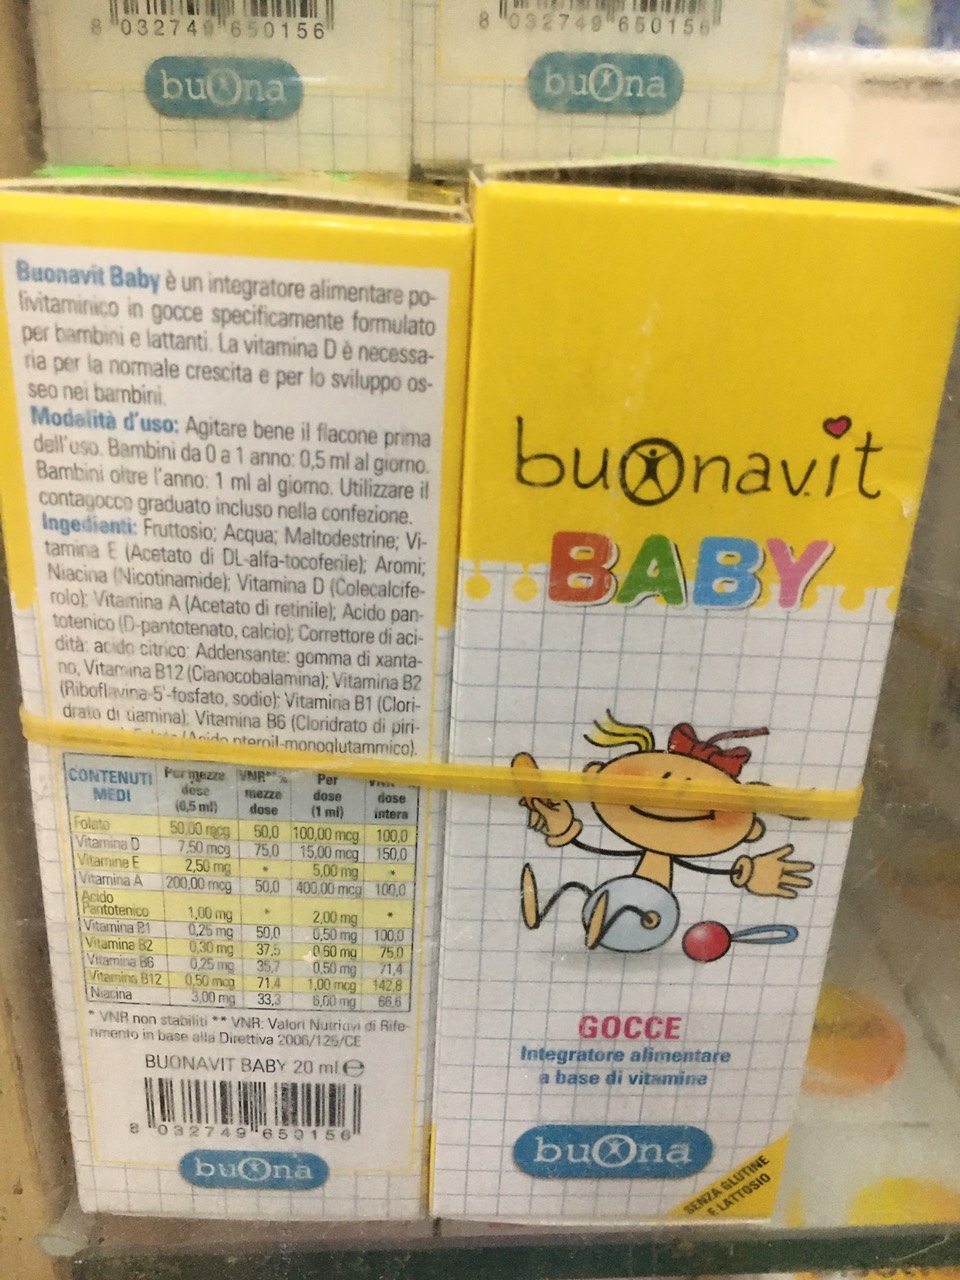 BuonaVit Baby 20ml